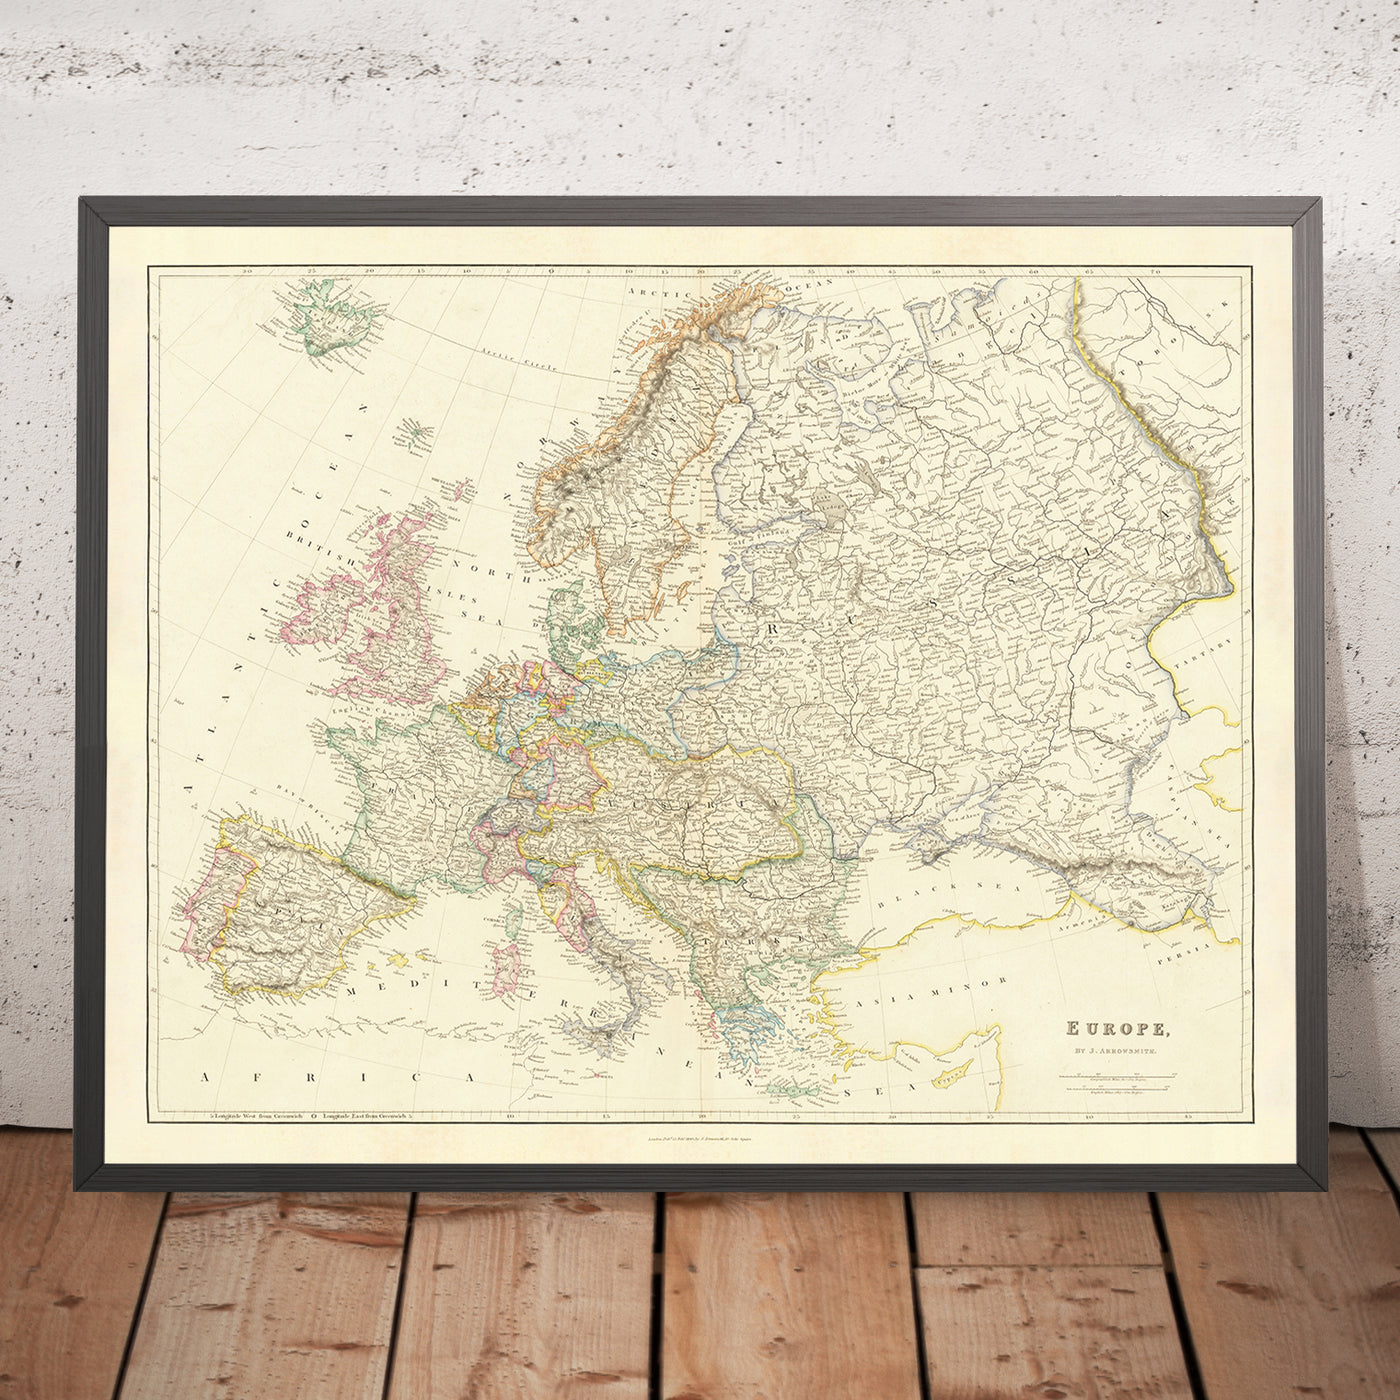 Antiguo mapa de Europa de Arrowsmith, 1840: panorama político de mediados del siglo XIX, topografía física detallada y reflejo de los límites geopolíticos